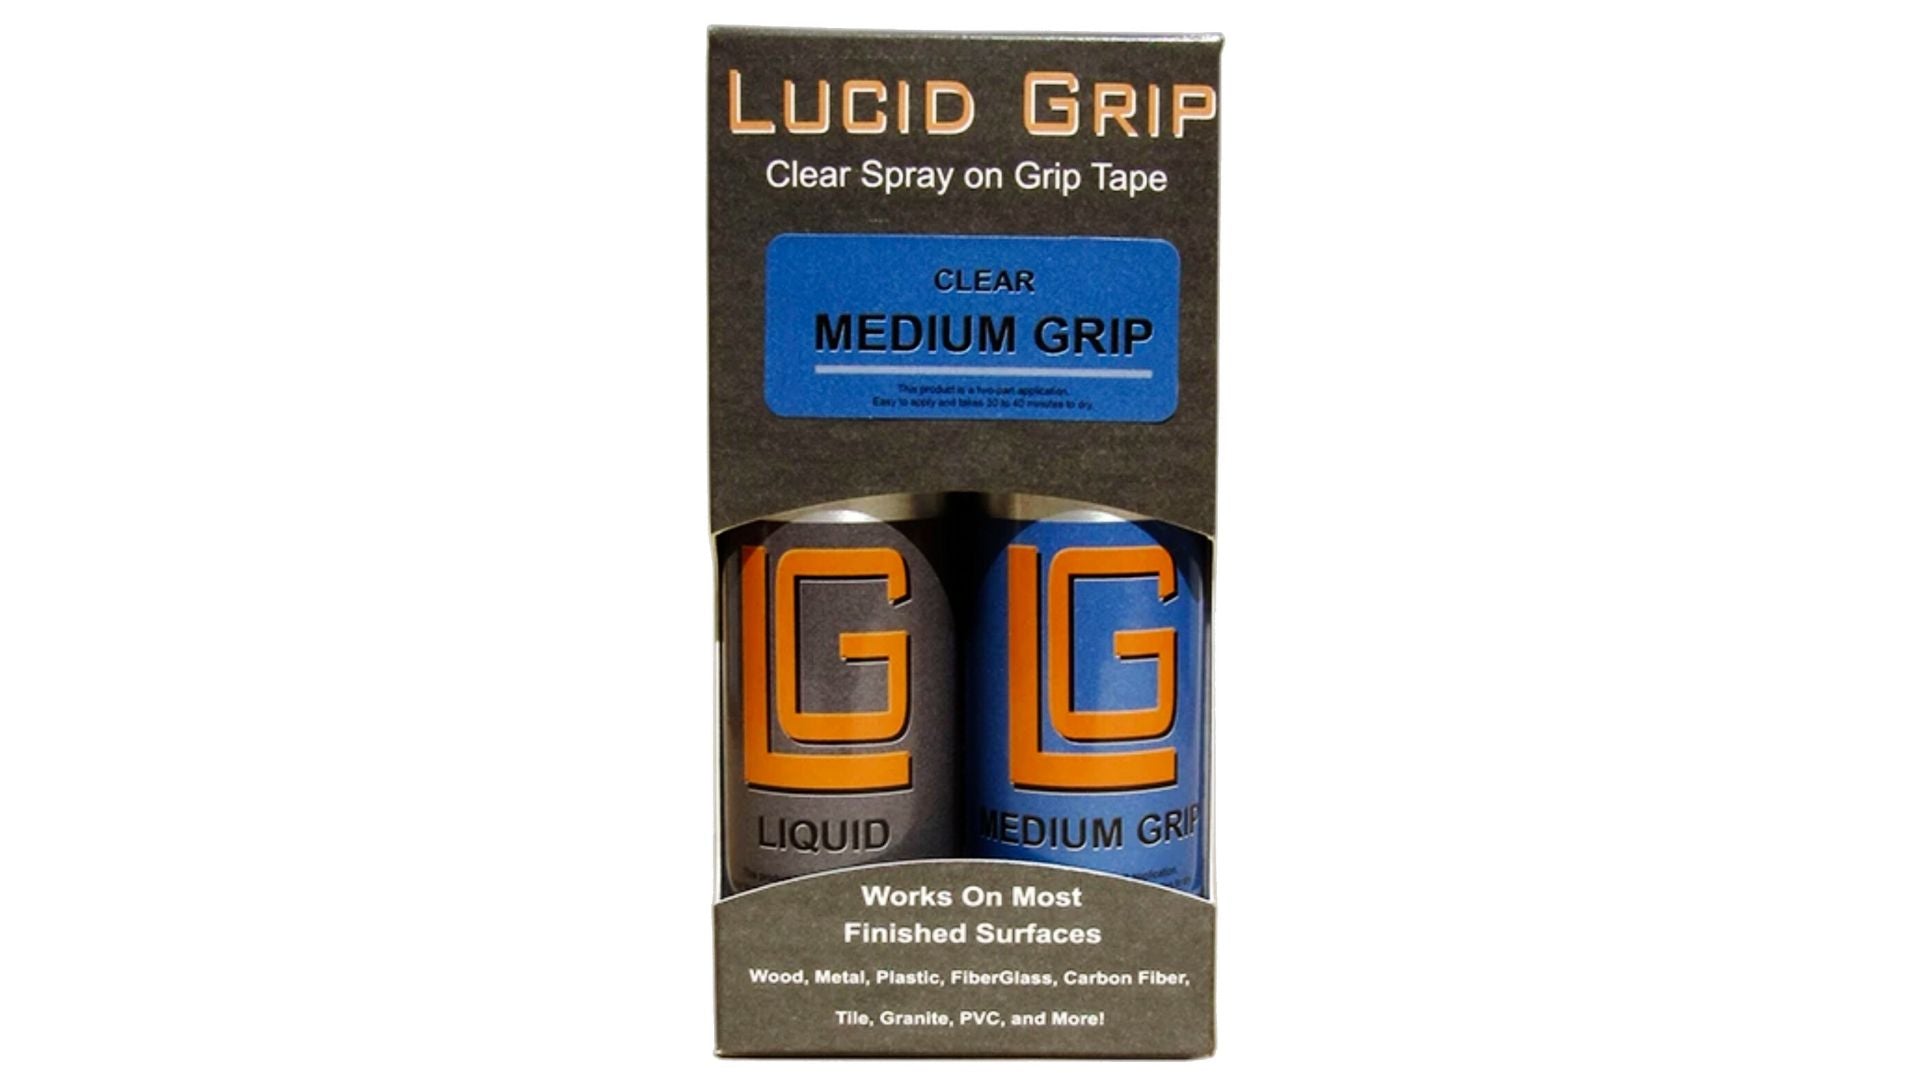 Spray Limpiador y Grip Tape Transparente - Lucid Grip